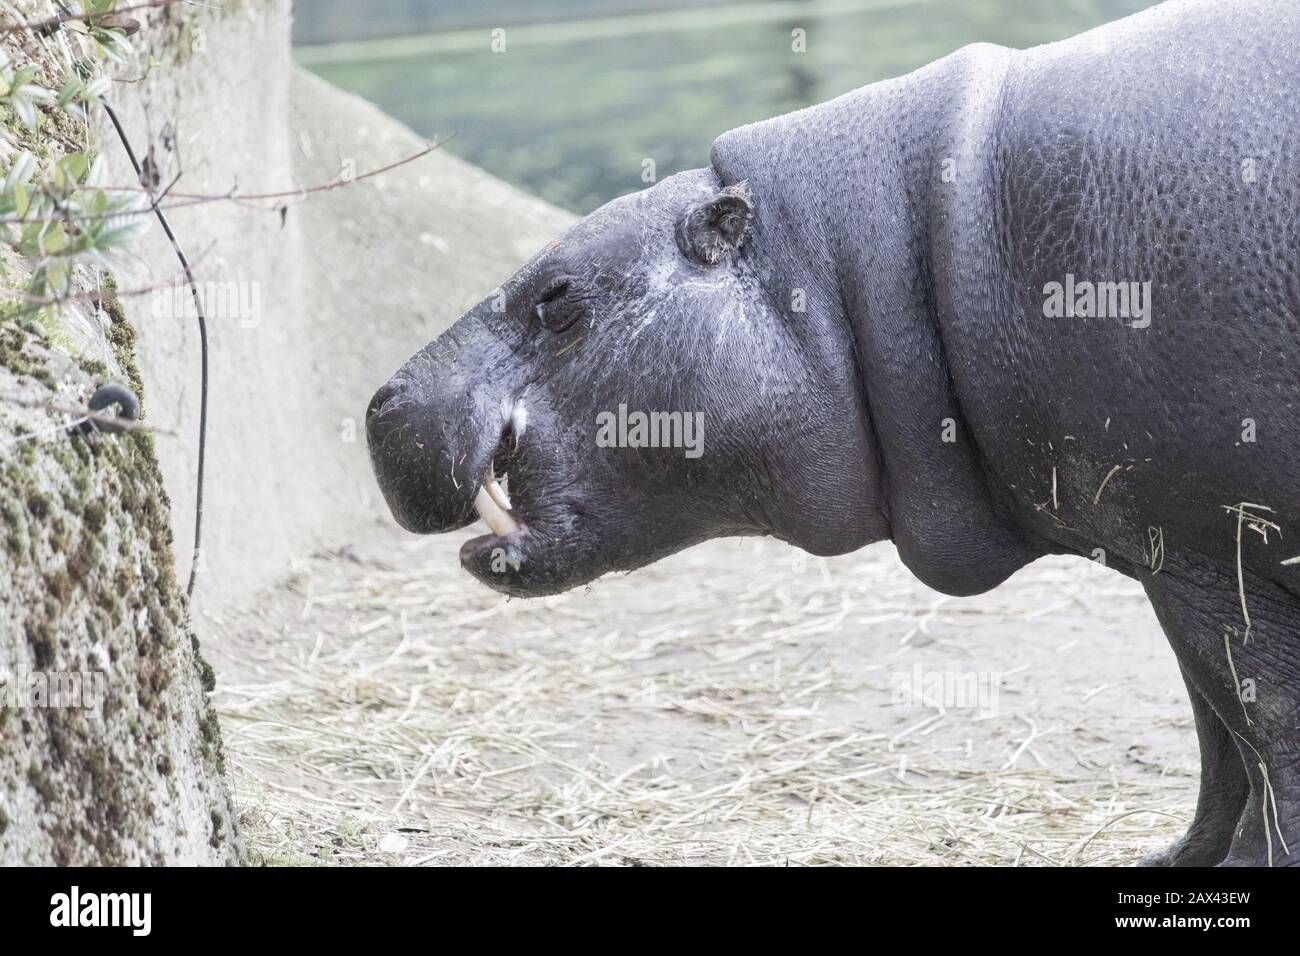 Closeup shot of a hippopotamus showing part of its long fangs Stock Photo